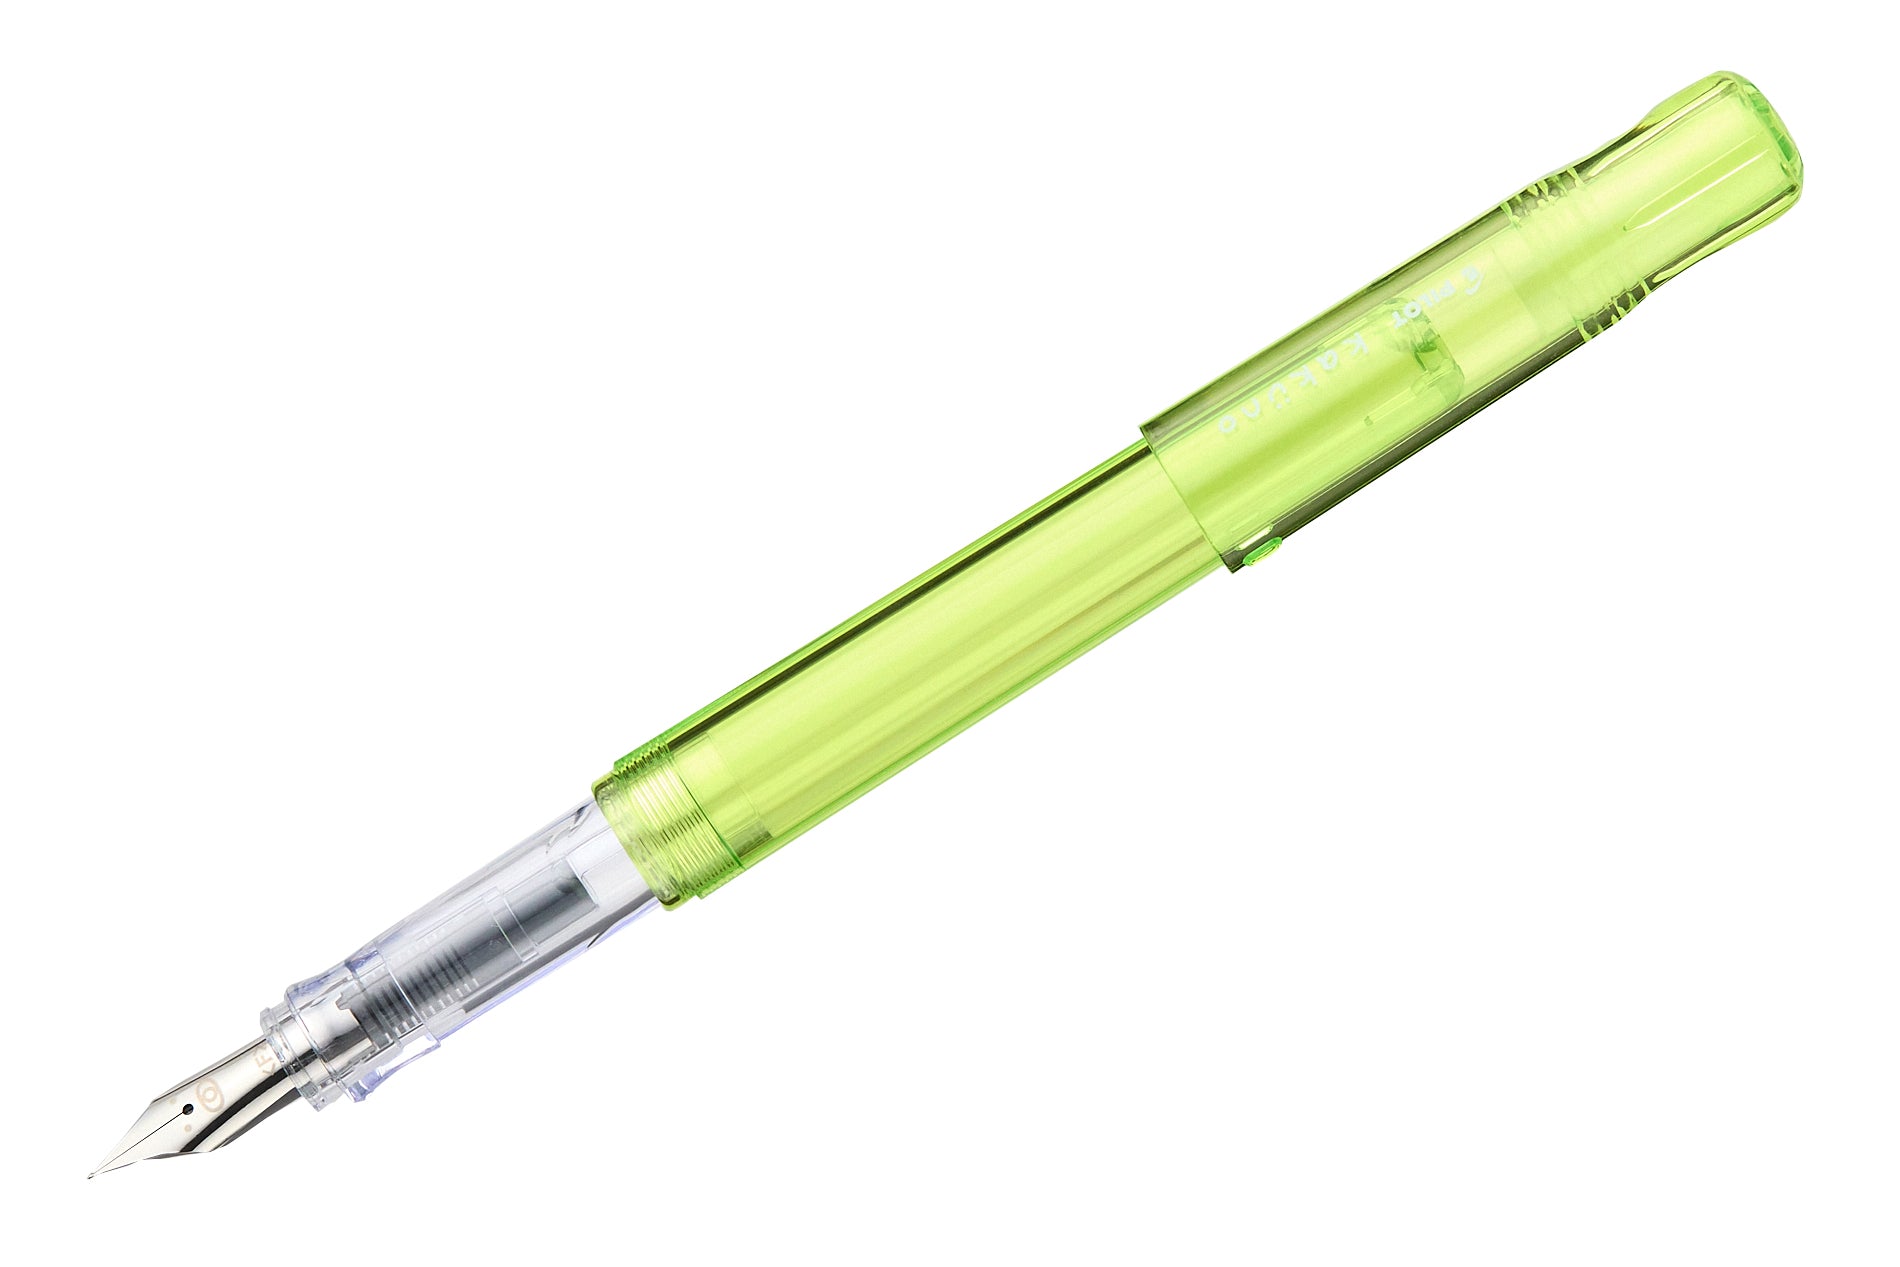 Pilot Kakuno Fountain Pen - Translucent Green - The Goulet Pen Company